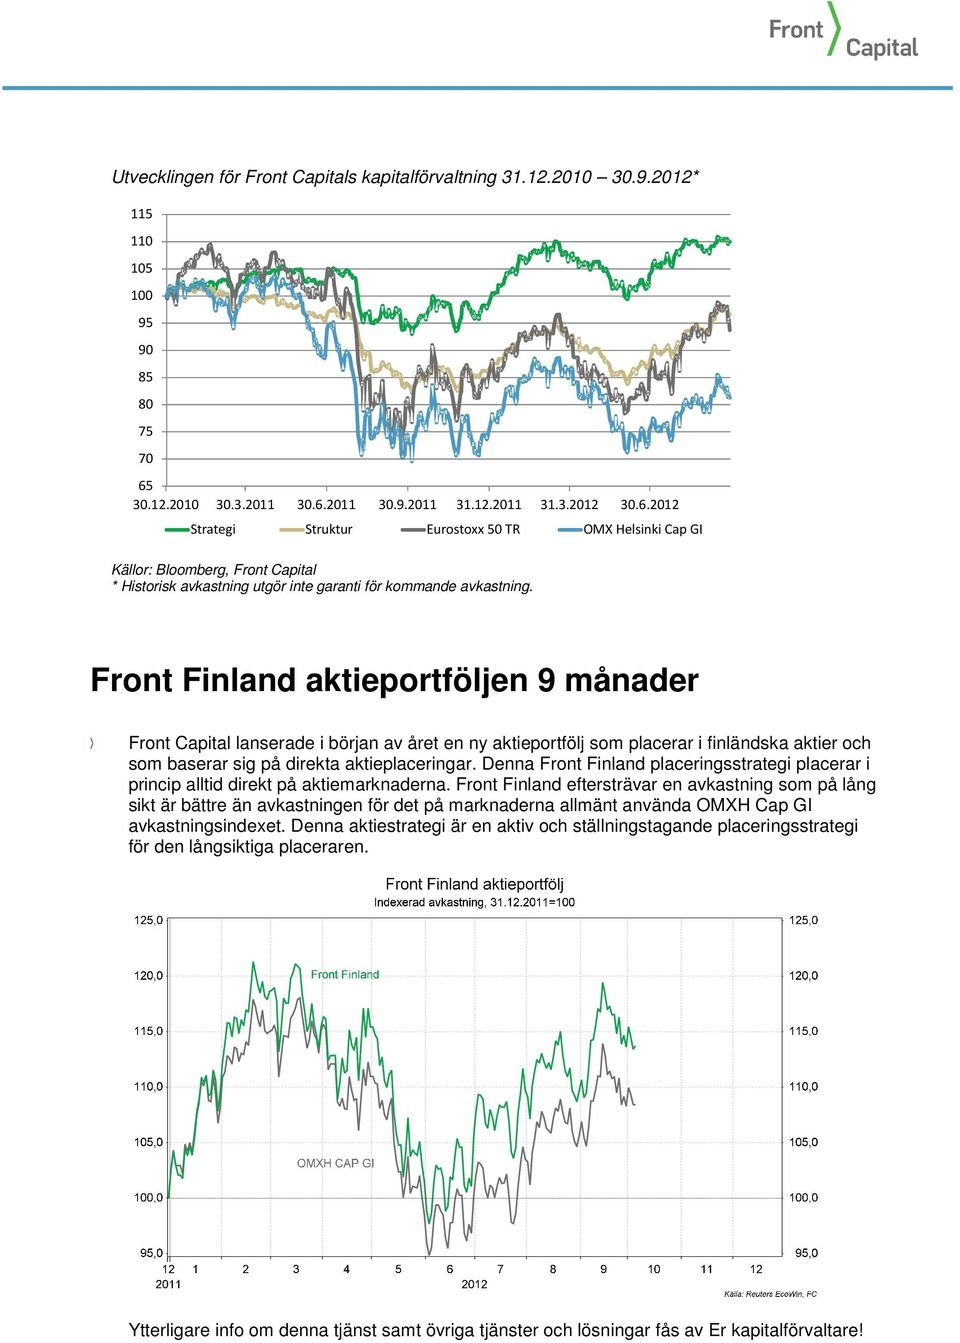 Front Finland aktieportföljen 9 månader Front Capital lanserade i början av året en ny aktieportfölj som placerar i finländska aktier och som baserar sig på direkta aktieplaceringar.